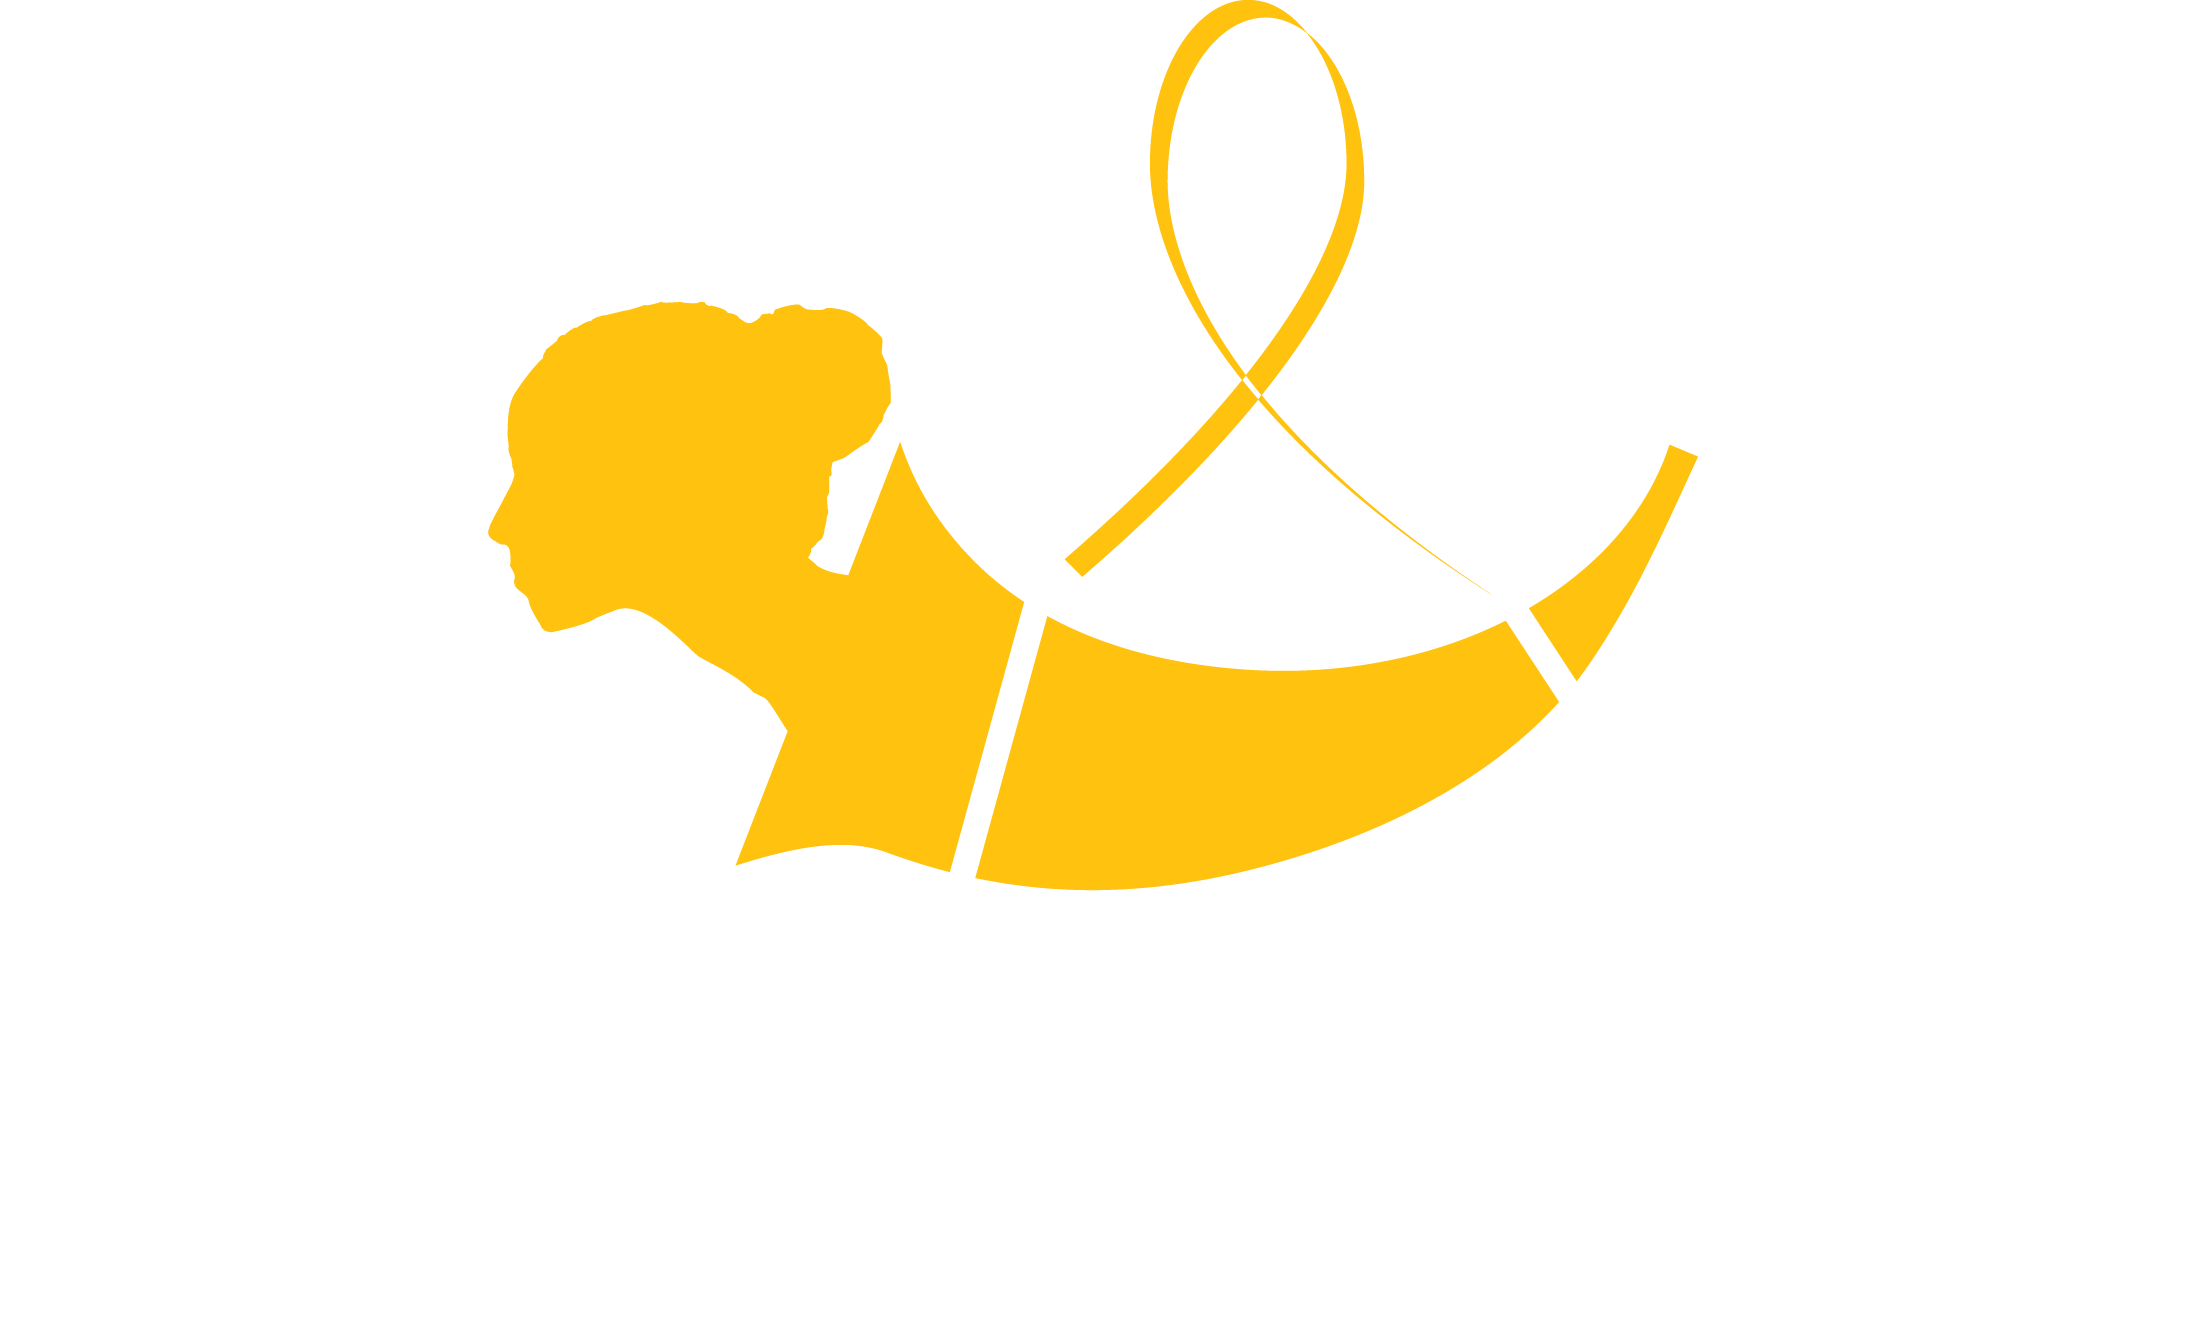 Logo Gemeente Uithoorn